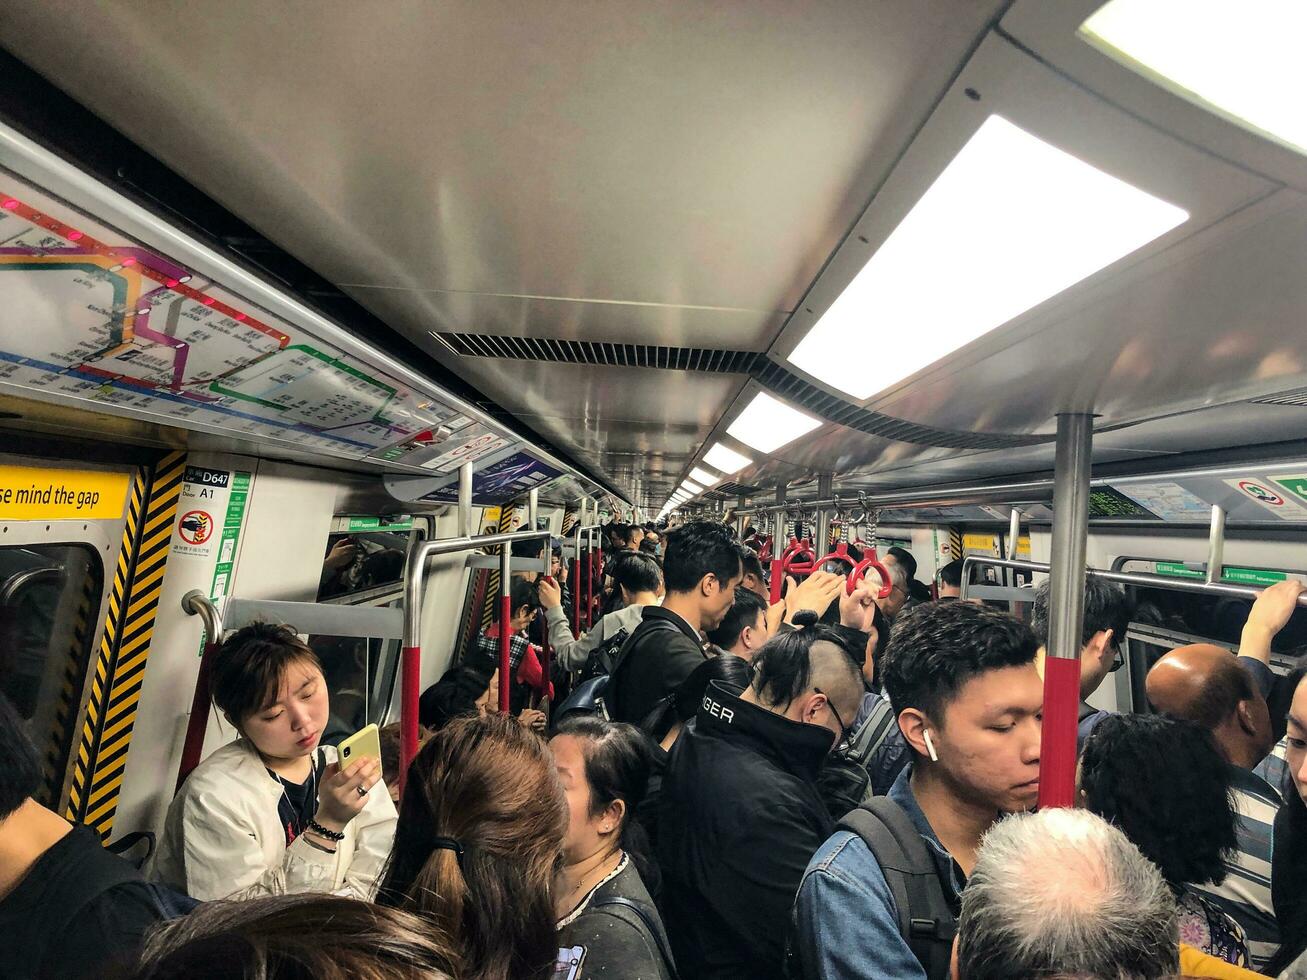 hong kong- pode 19, 2019 a massa transito estrada de ferro ou mtr é uma principal público transporte rede servindo hong kong. lotado pressa hora. foto